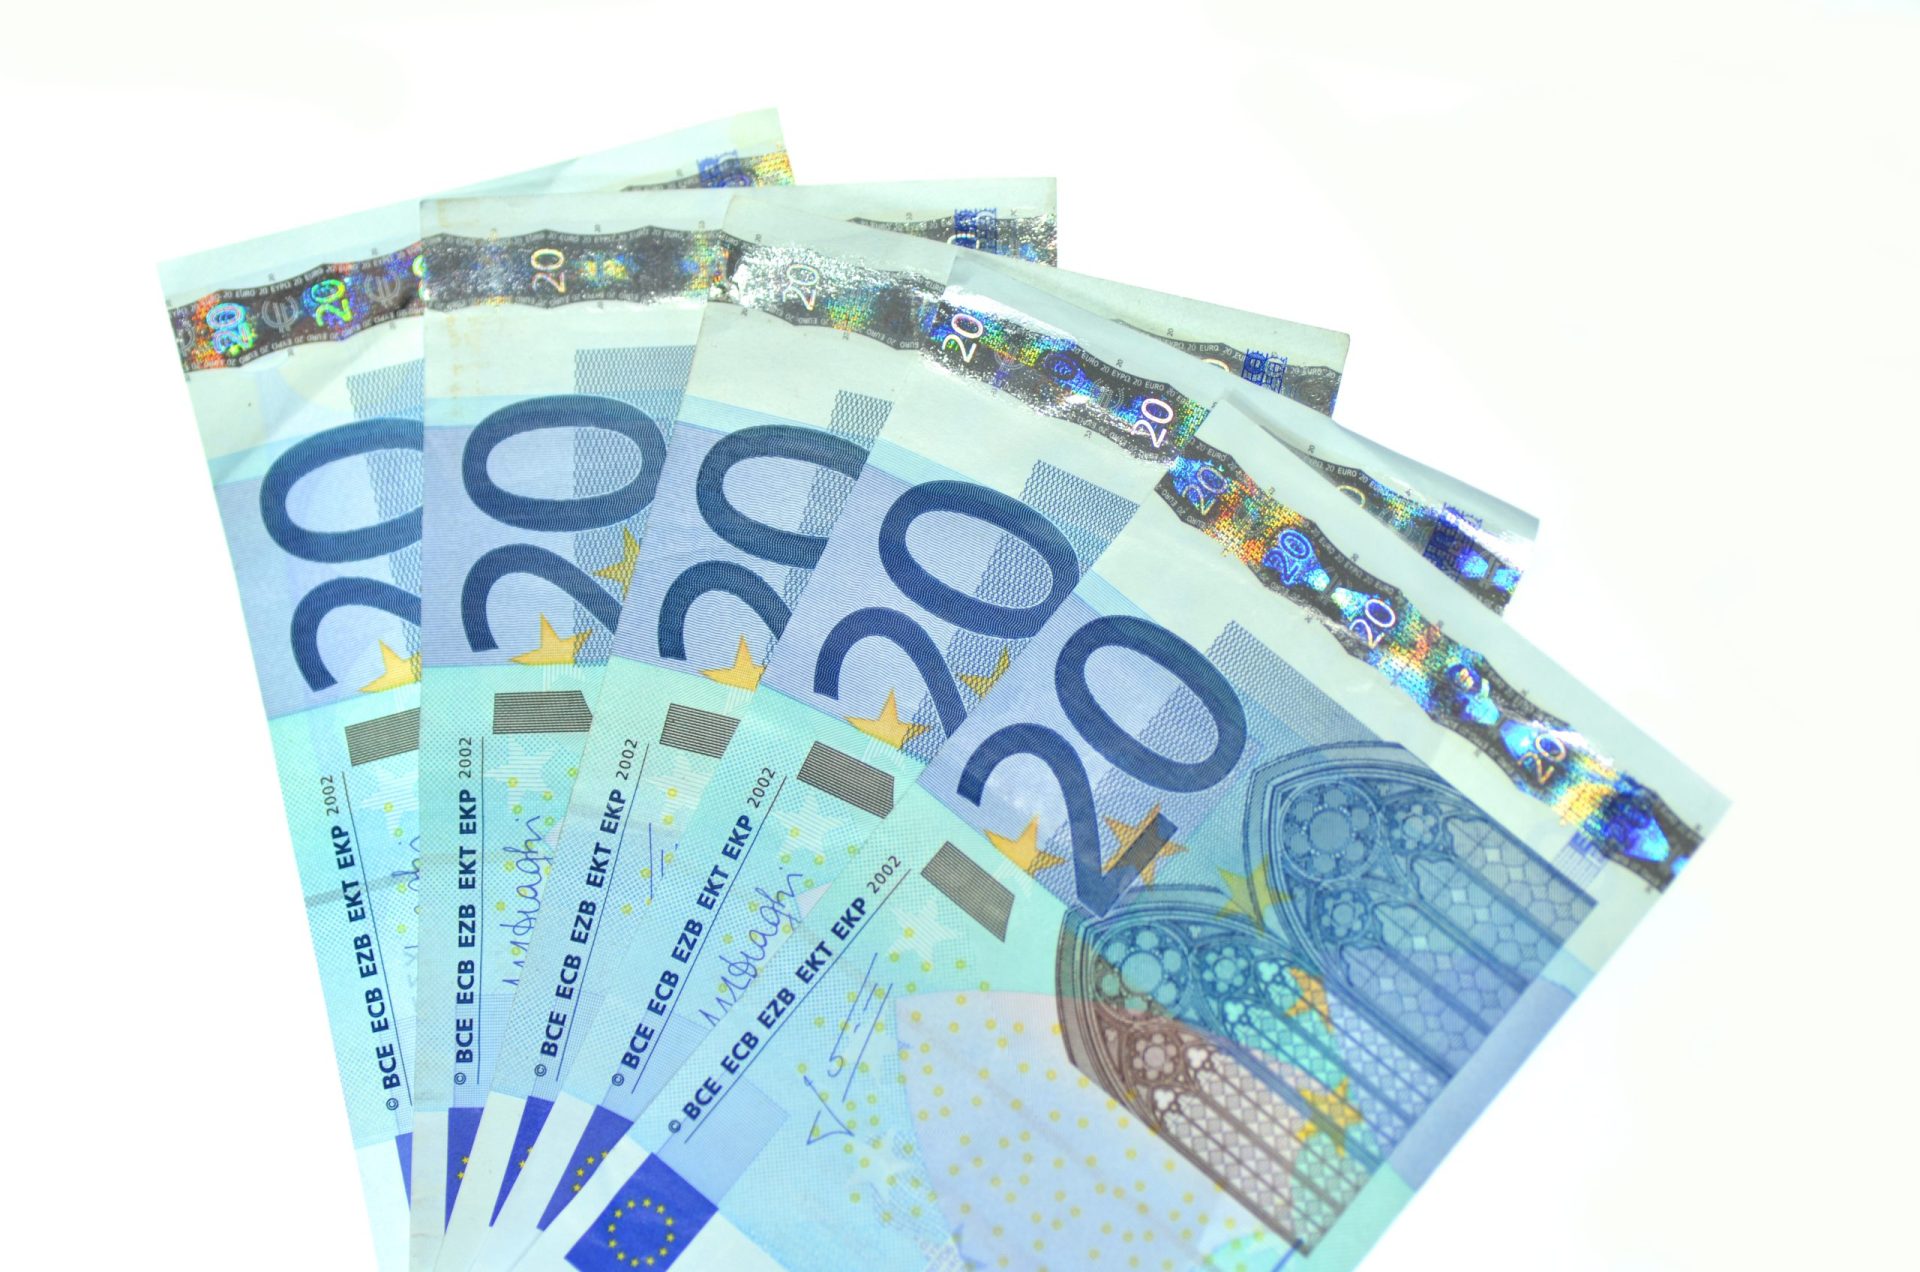 Nova nota de 20 euros entra em circulação a 25 de Novembro